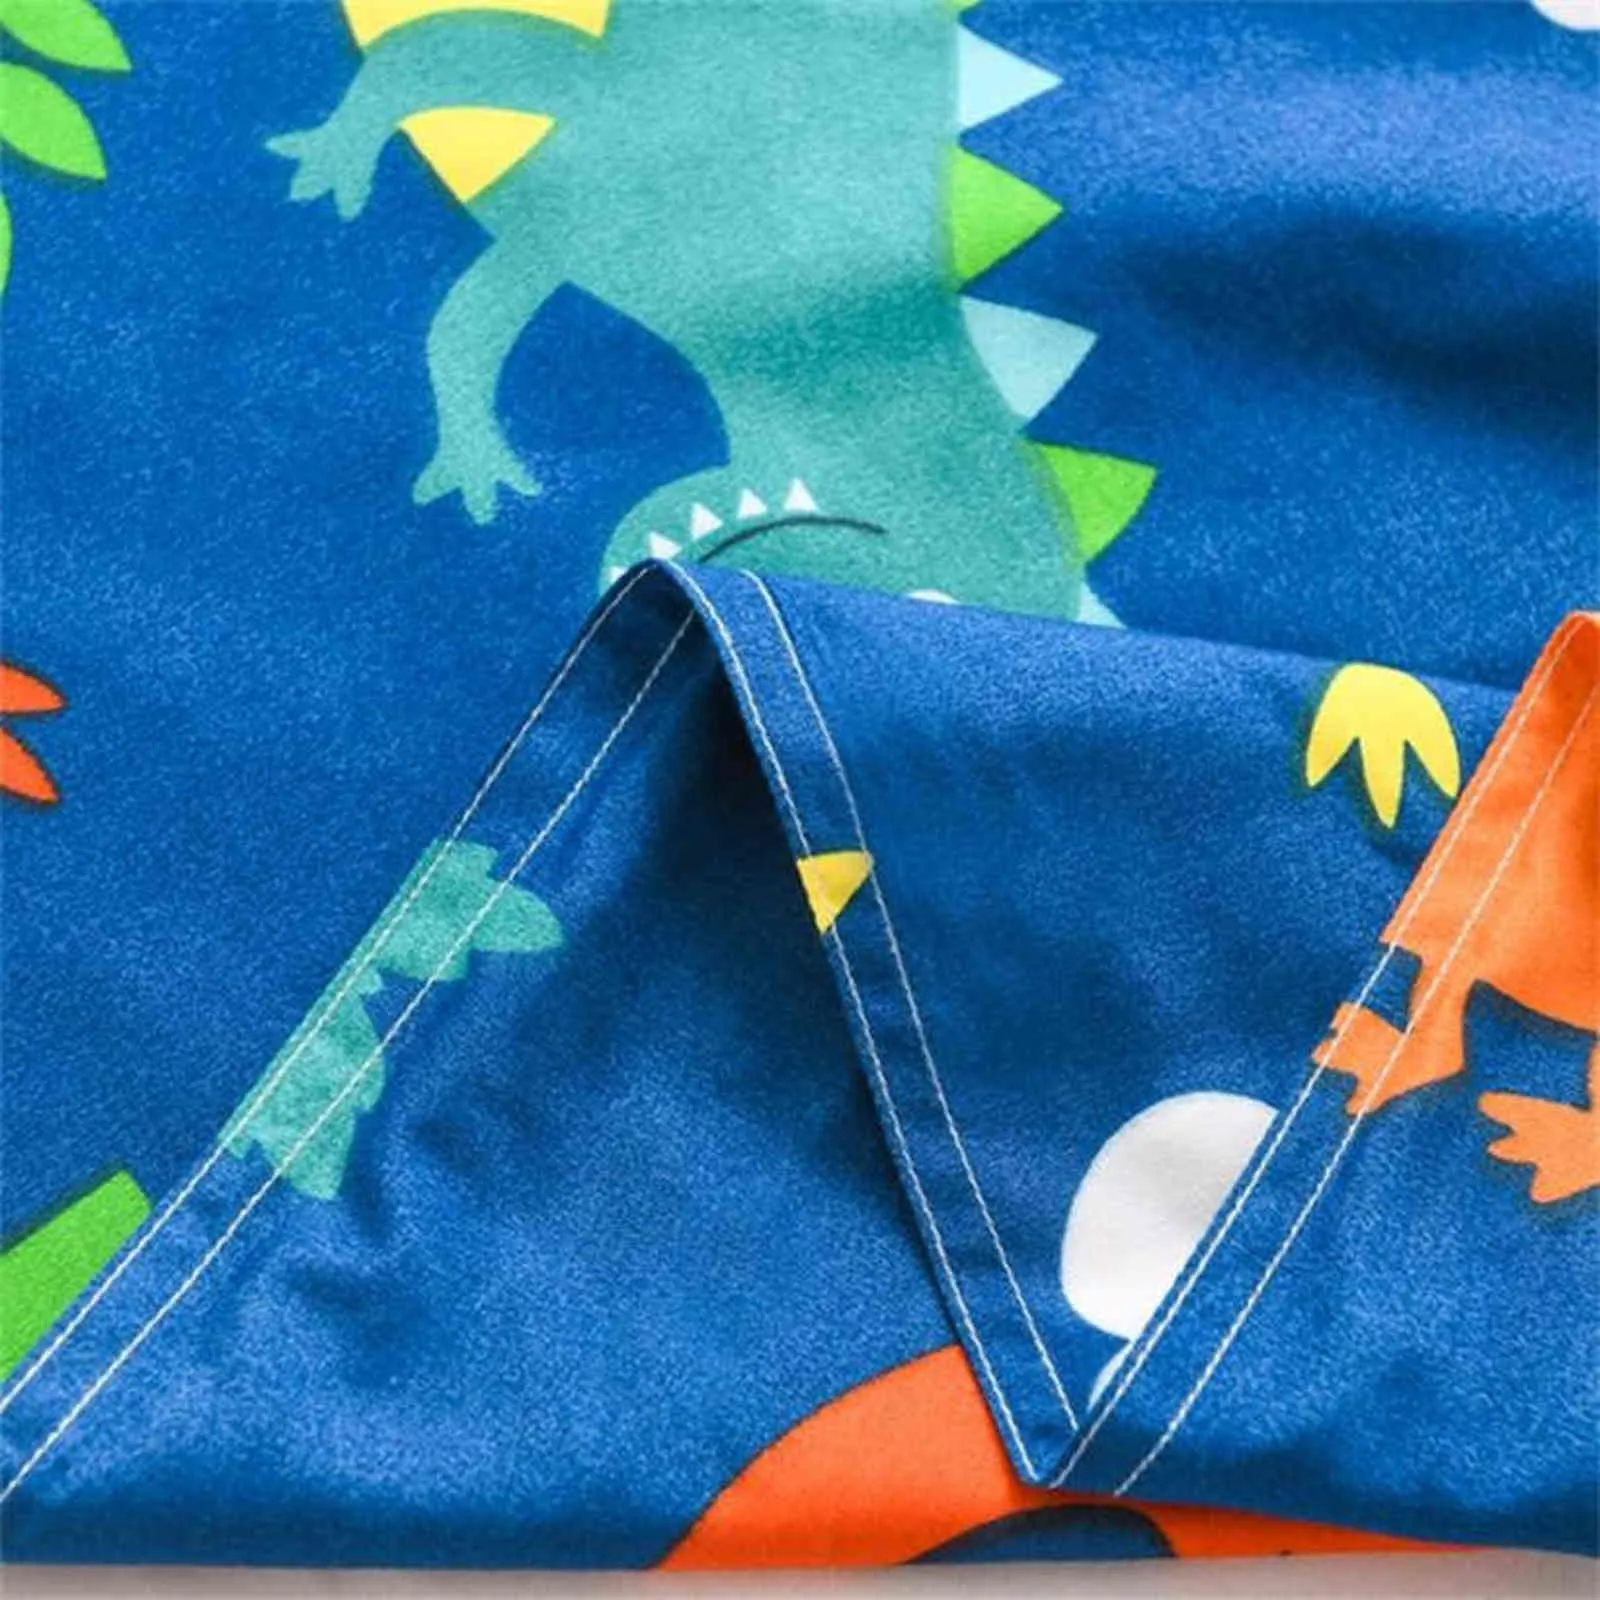 漫画恐竜の子供子供の寝具セット4個の羽毛布団カバーセット女の子かわいいカワイイキルトカバーベッドシートリネン枕カバーH1115